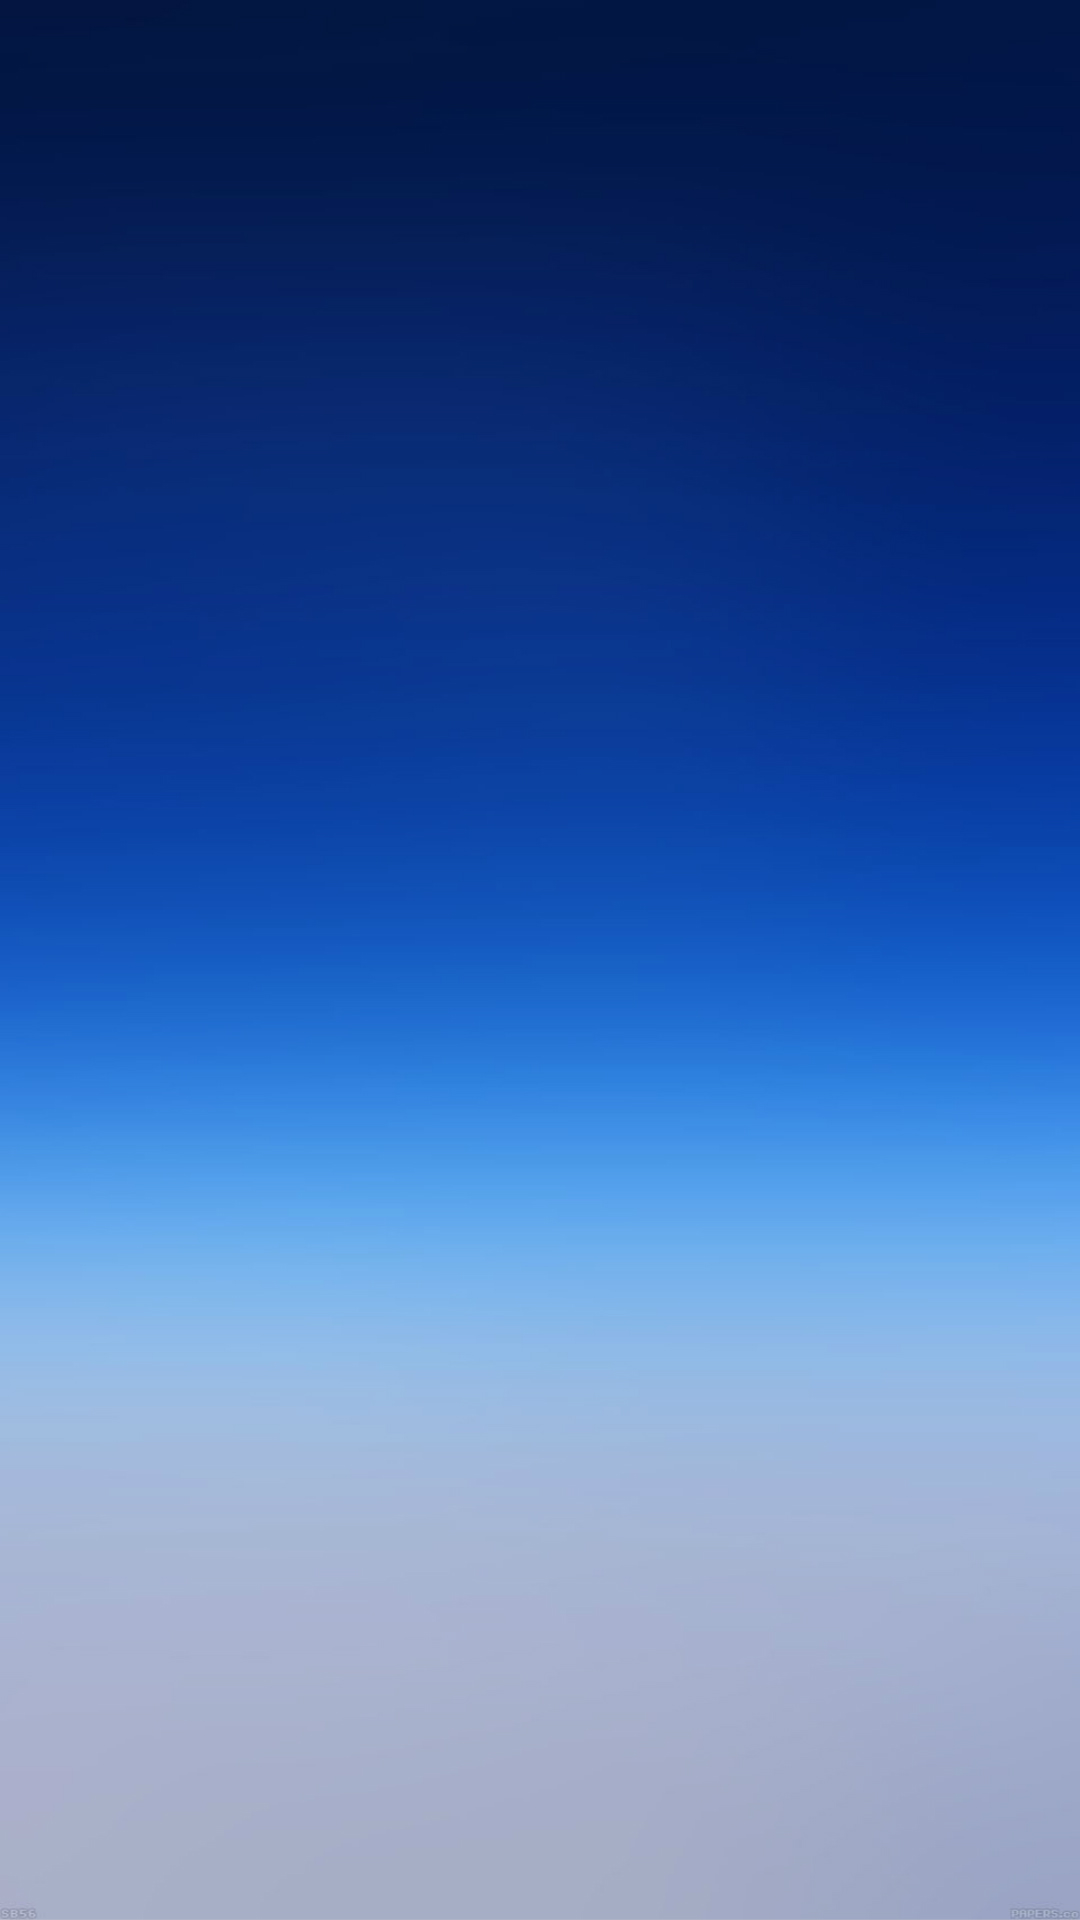 blaue tapete iphone 6,himmel,blau,tagsüber,atmosphäre,kobaltblau